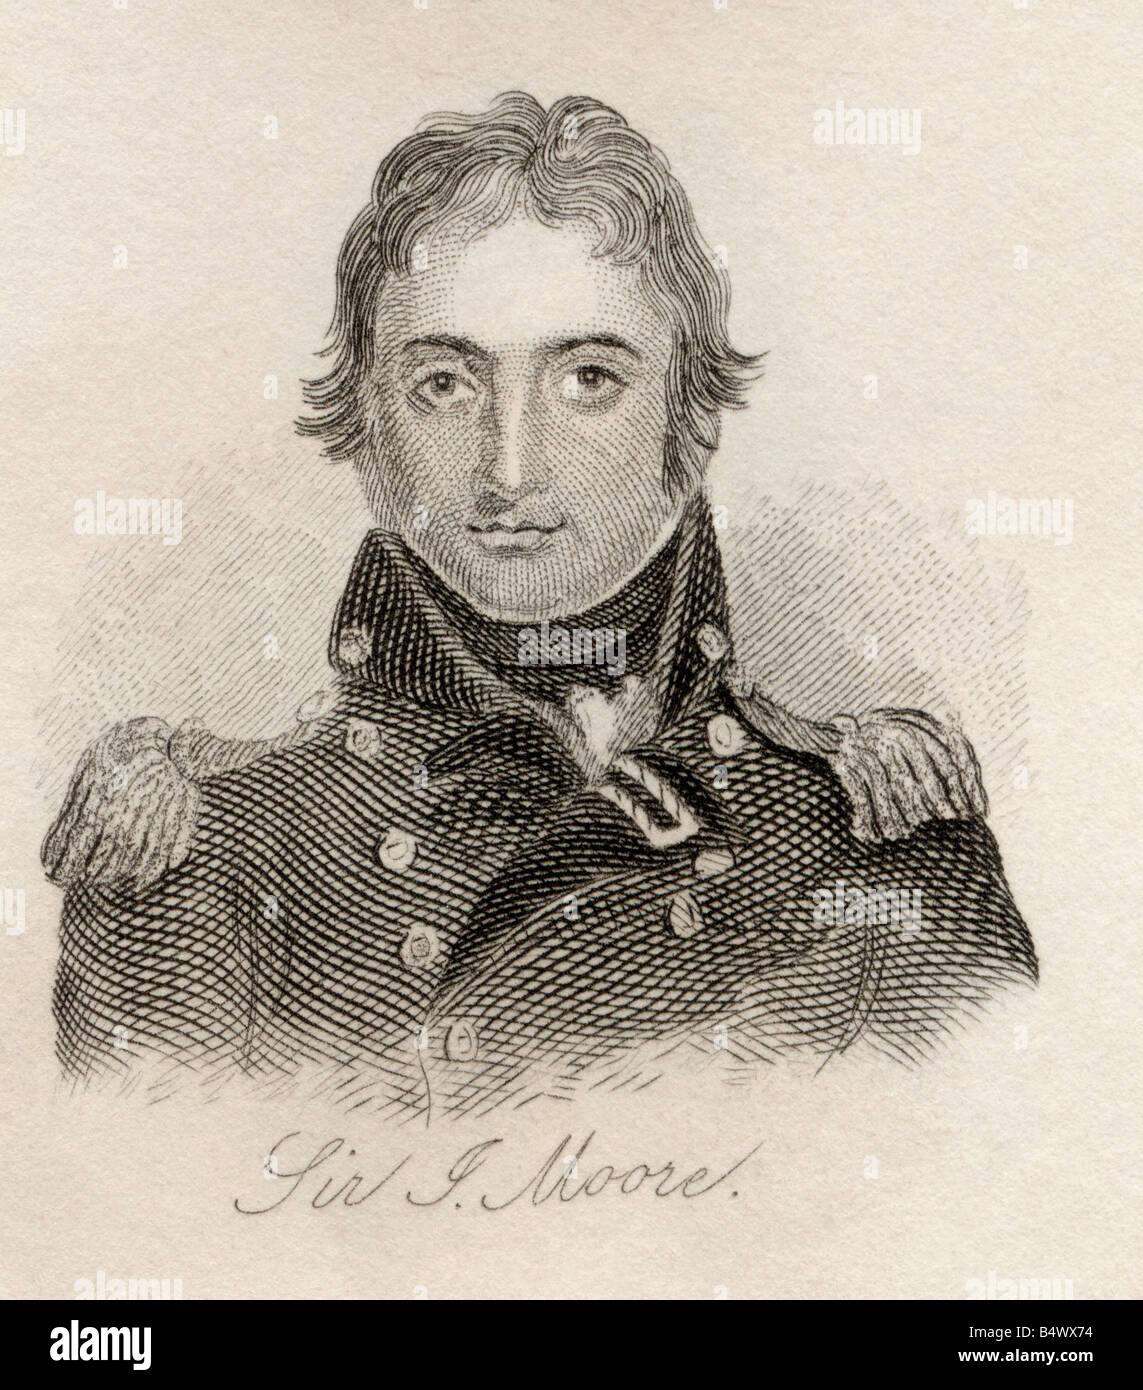 Sir John Moore, 1761 à 1809. Soldat britannique et général. D'après le livre, Crabbs Historical Dictionary publié en 1825. Banque D'Images